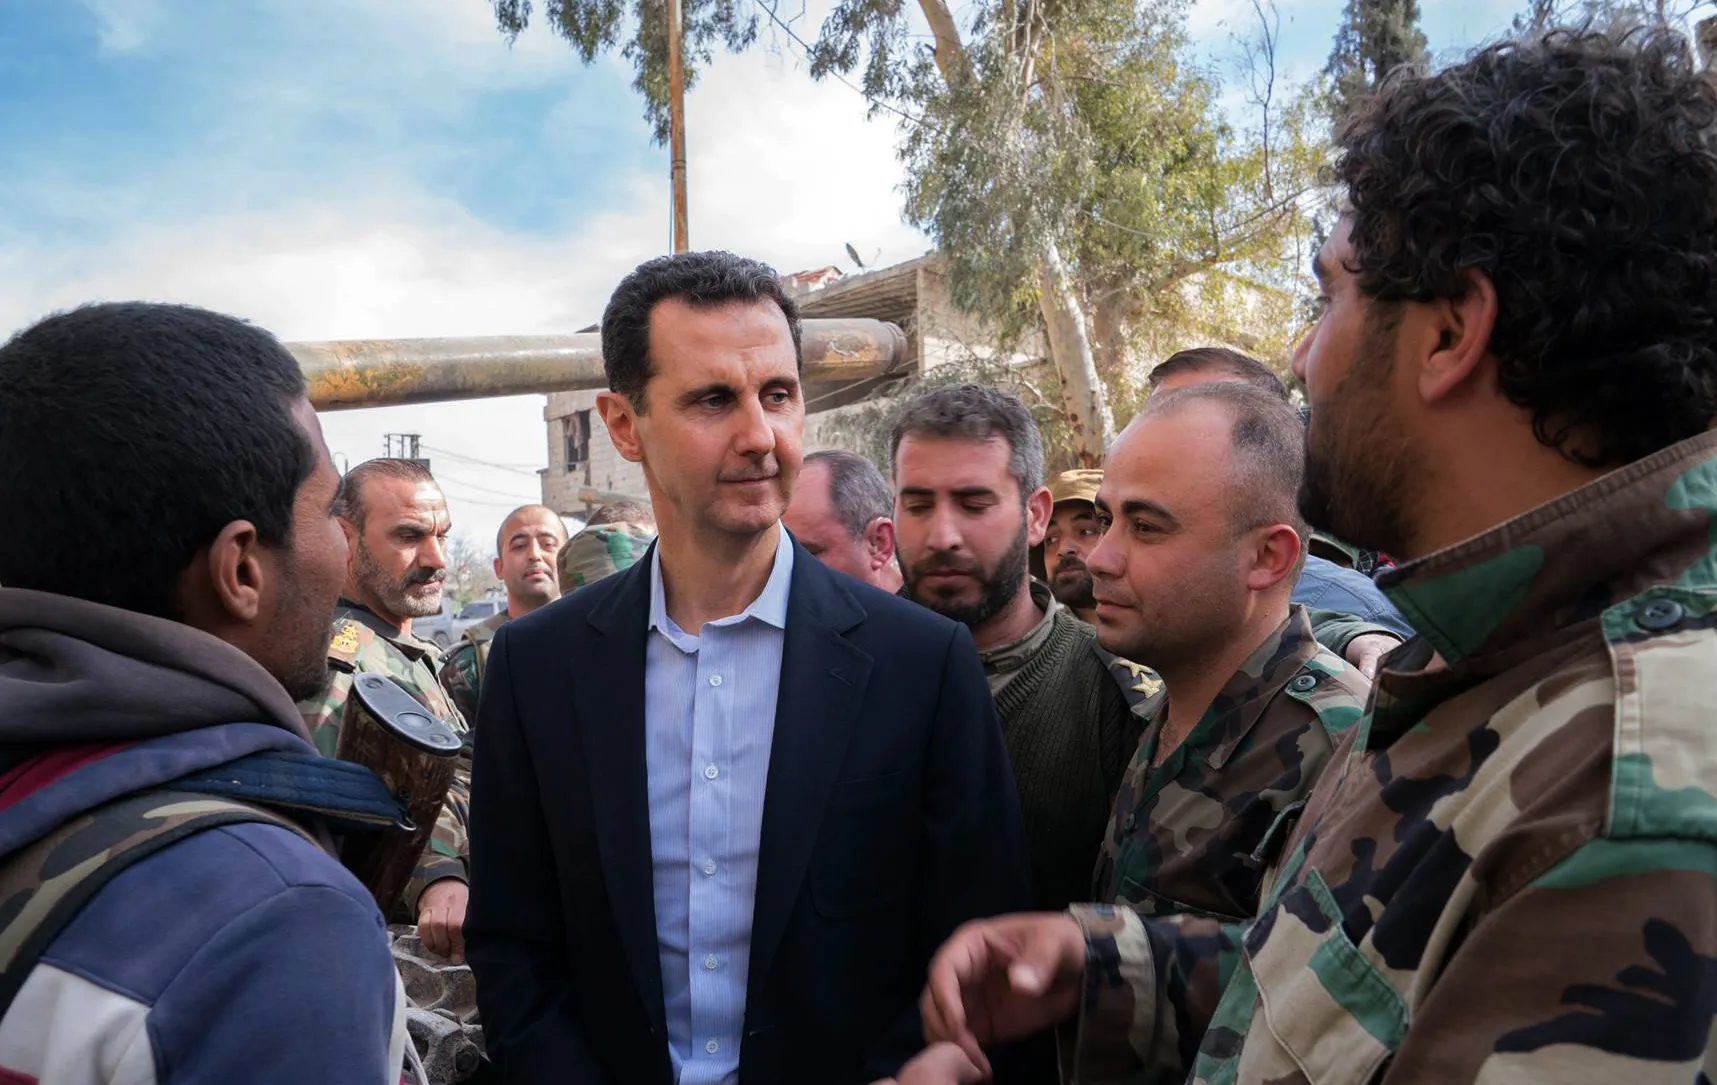 مجلة: رد فعل واشنطن والمجتمع الدولي إزاء جرائم دمشق "ترتب عليه عواقب كثيرة"